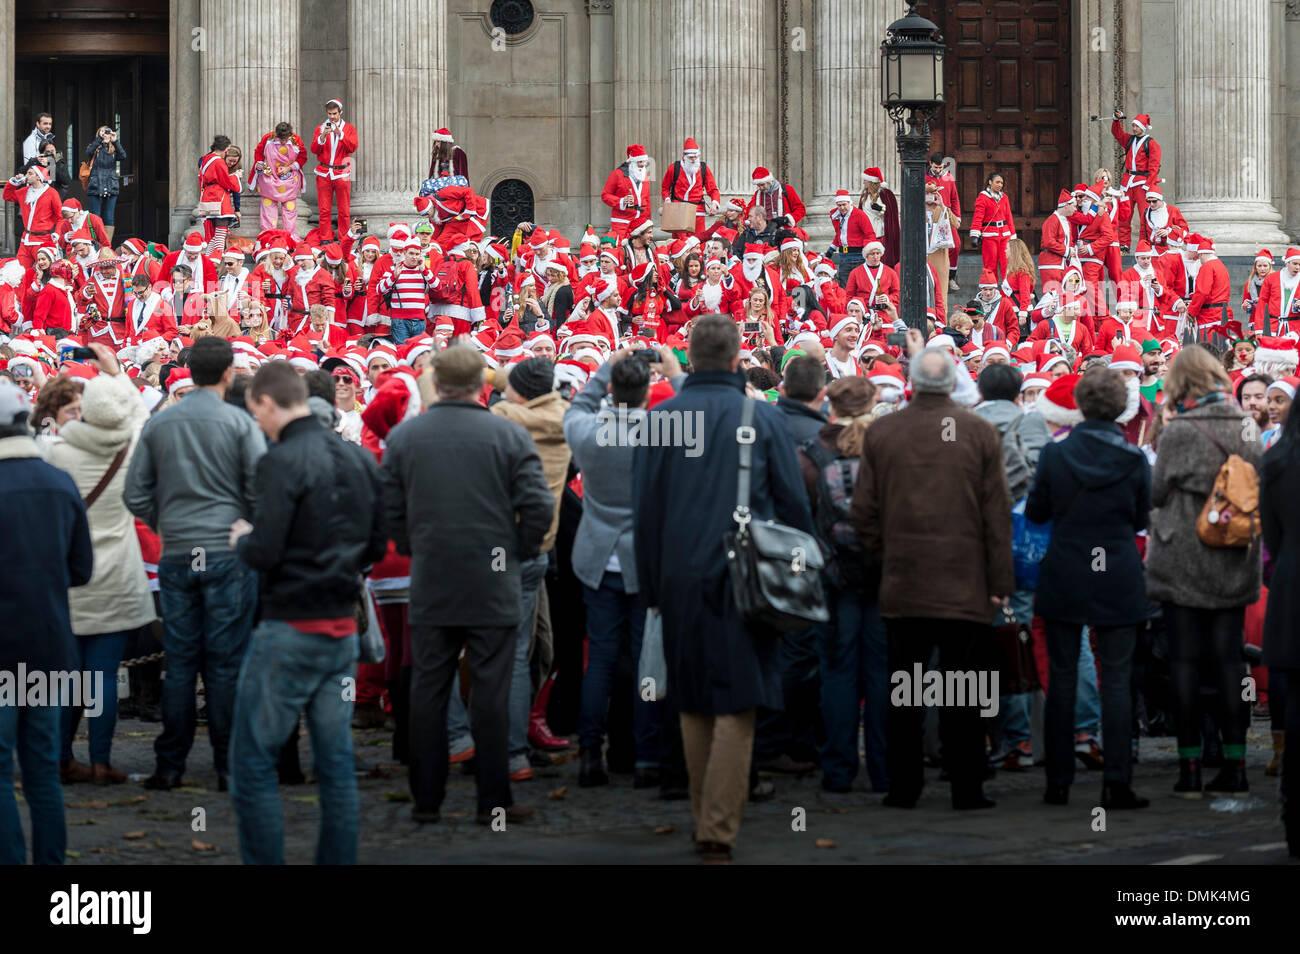 Londres, Royaume-Uni. 14 Décembre, 2013. Des centaines de Santas rassemblement sur les marches de la Cathédrale St Paul avant leur arrêt mars pour rencontrer des groupes d'autres Santas pour célébrer le Santacon annuel. Photographe : Gordon 1928/Alamy Live News Banque D'Images